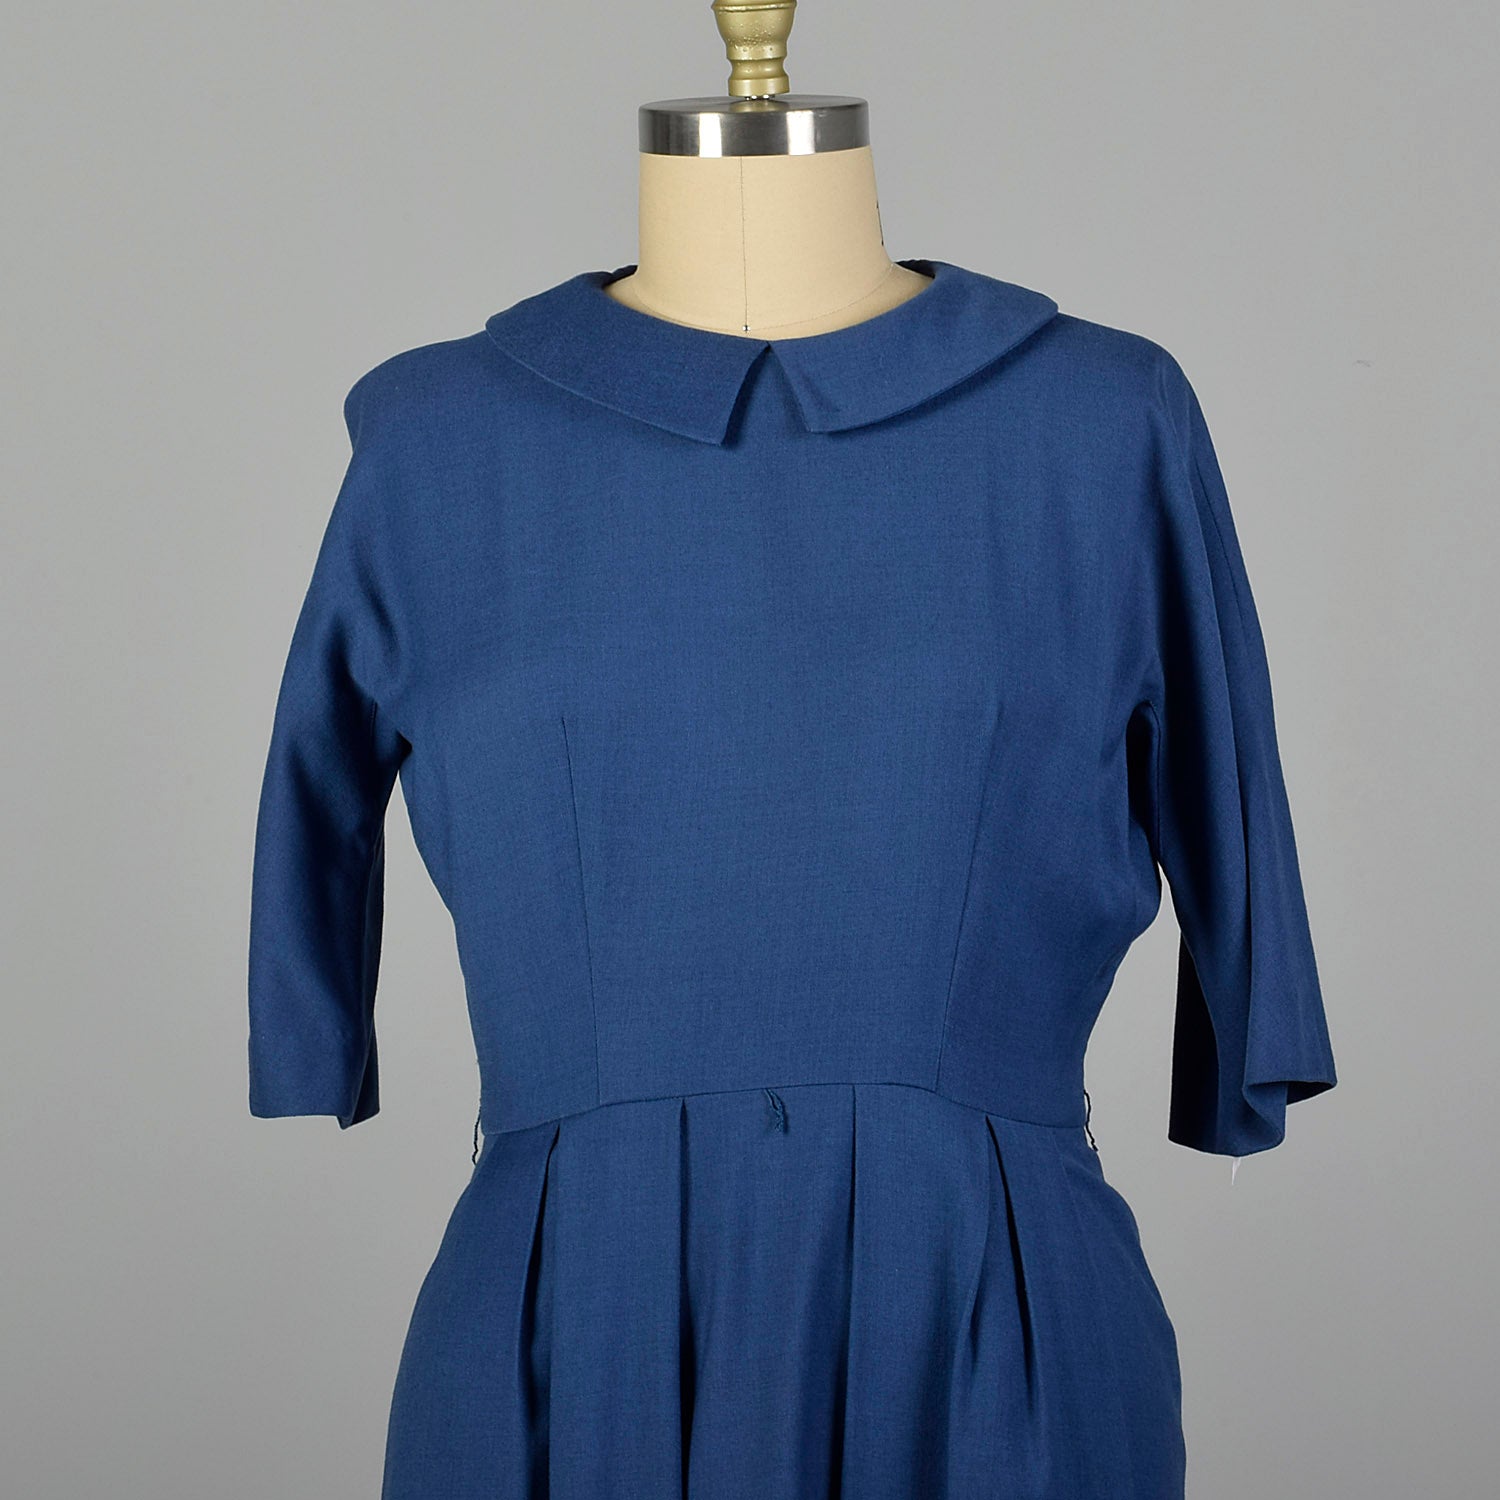 Large 1950s Blue Belted Dress